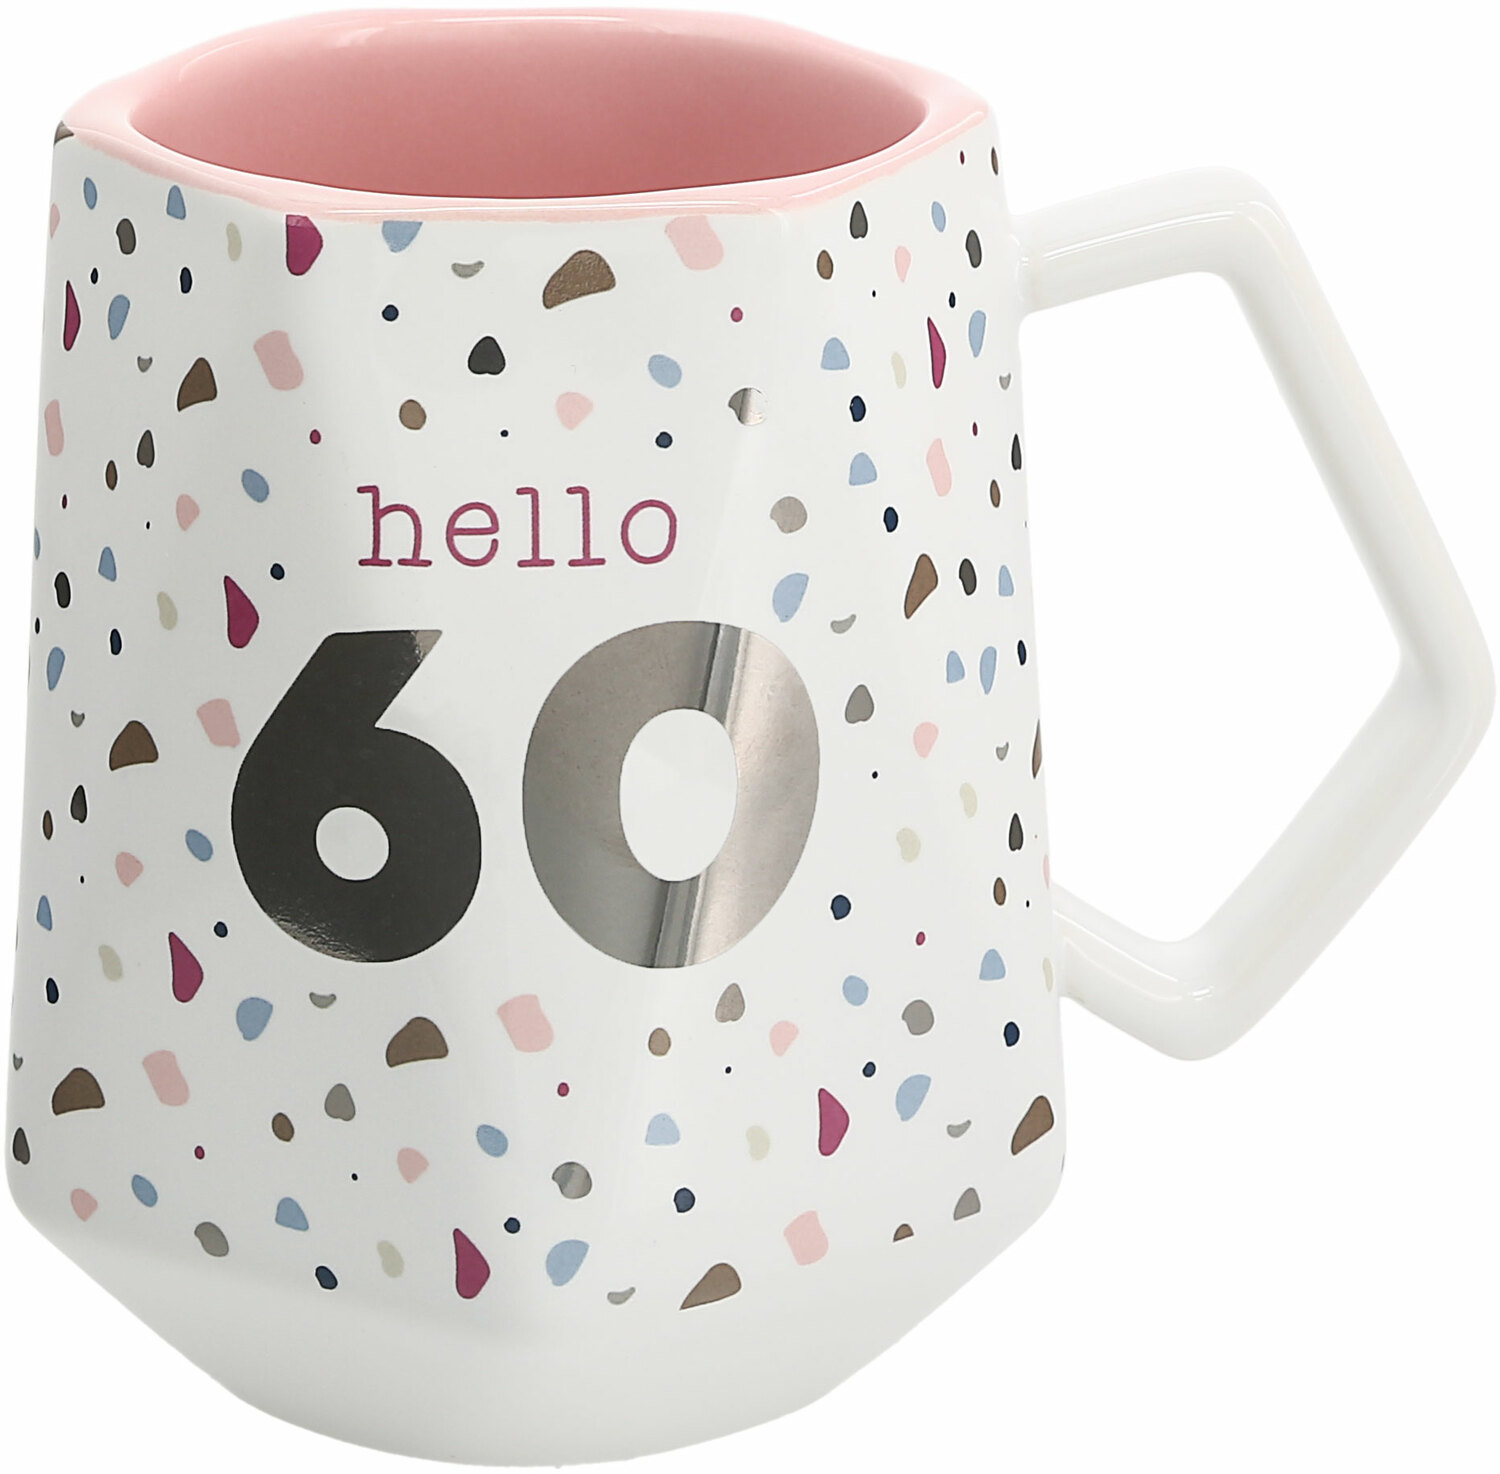 Hello 60 by Happy Confetti to You - Hello 60 - 17 oz Geometric Cup